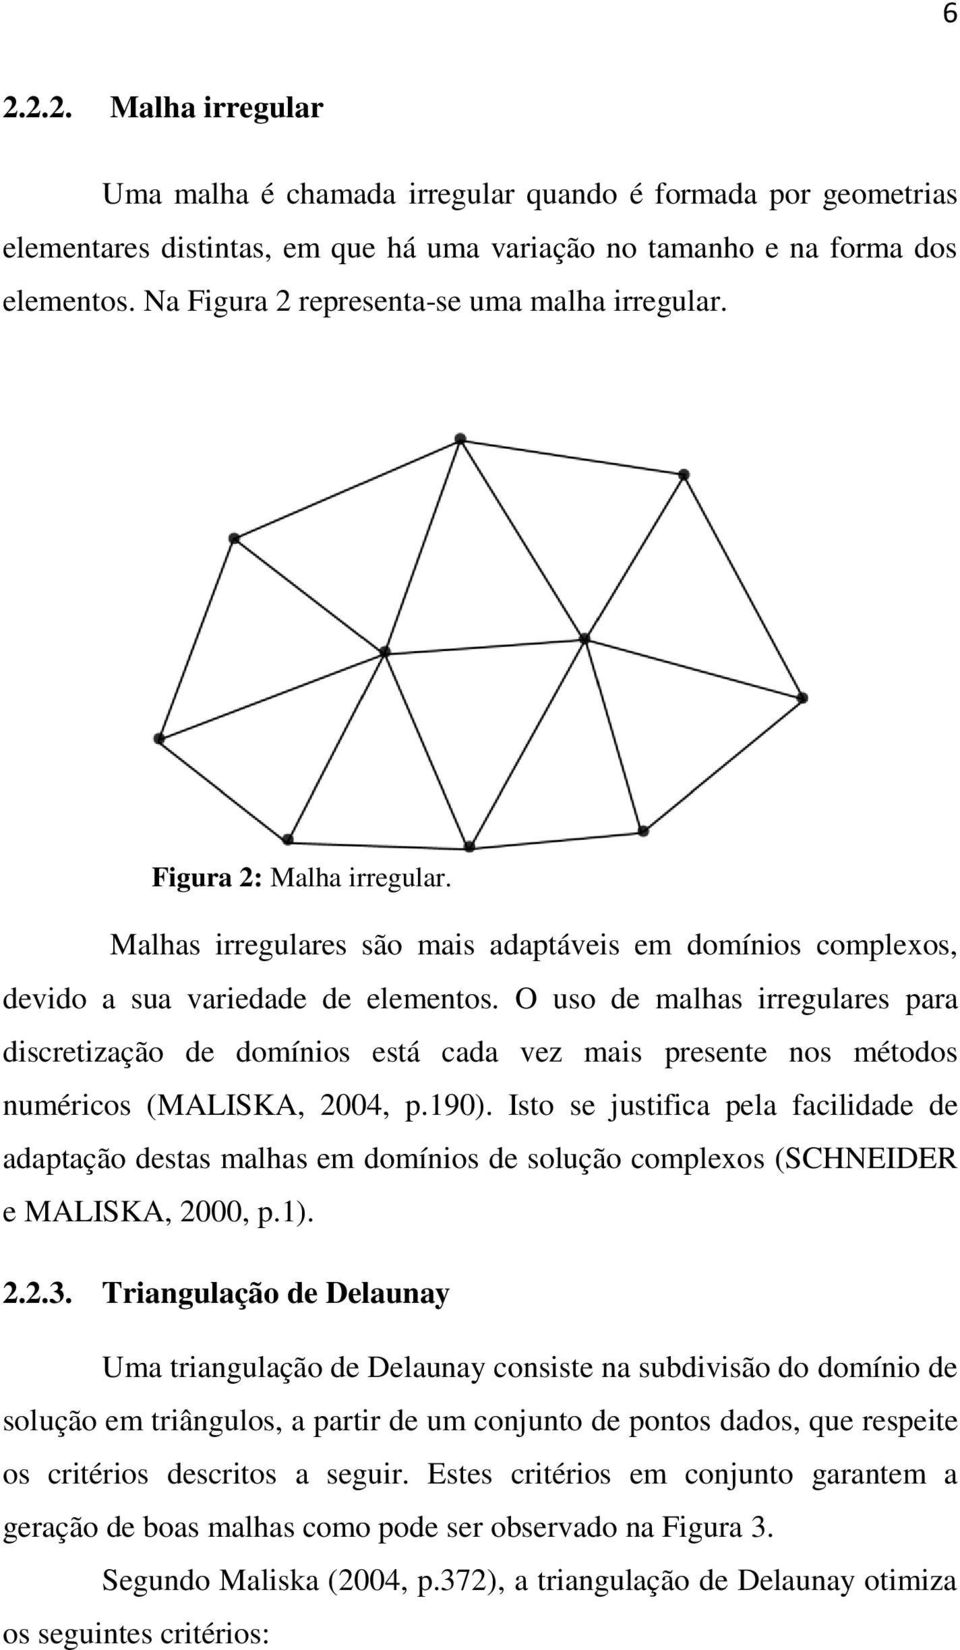 O uso de malhas irregulares para discretização de domínios está cada vez mais presente nos métodos numéricos (MALISKA, 2004, p.190).